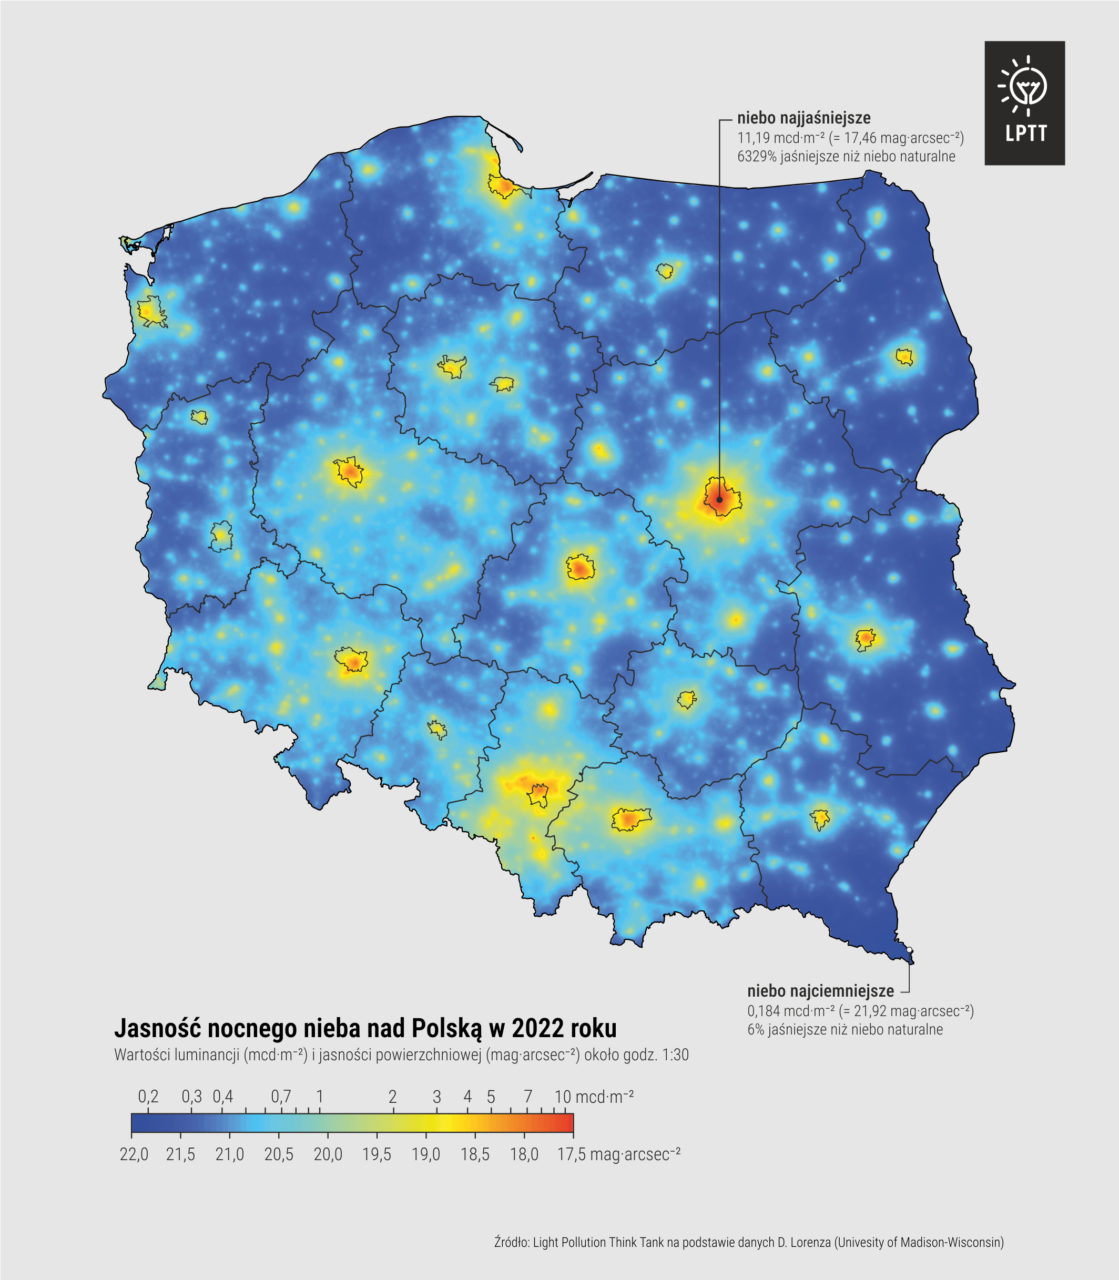 Mapa jasności prezentująca nocne niebo nad Polską w 2022 roku, przedstawiająca poziomy zanieczyszczenia światłem na podstawie danych luminescencyjnych. Obszary o różnym stopniu zanieczyszczenia oznaczone są kolorami od niebieskiego (mniejsze zanieczyszczenie) po czerwony (duże zanieczyszczenie). W legendzie przedstawiono skale wartości luminescencji i jasności powierzchniowej. Na dole znajduje się źródło danych: Light Pollution Think Tank na podstawie danych D. Lorrentza (University of Madison-Wisconsin).